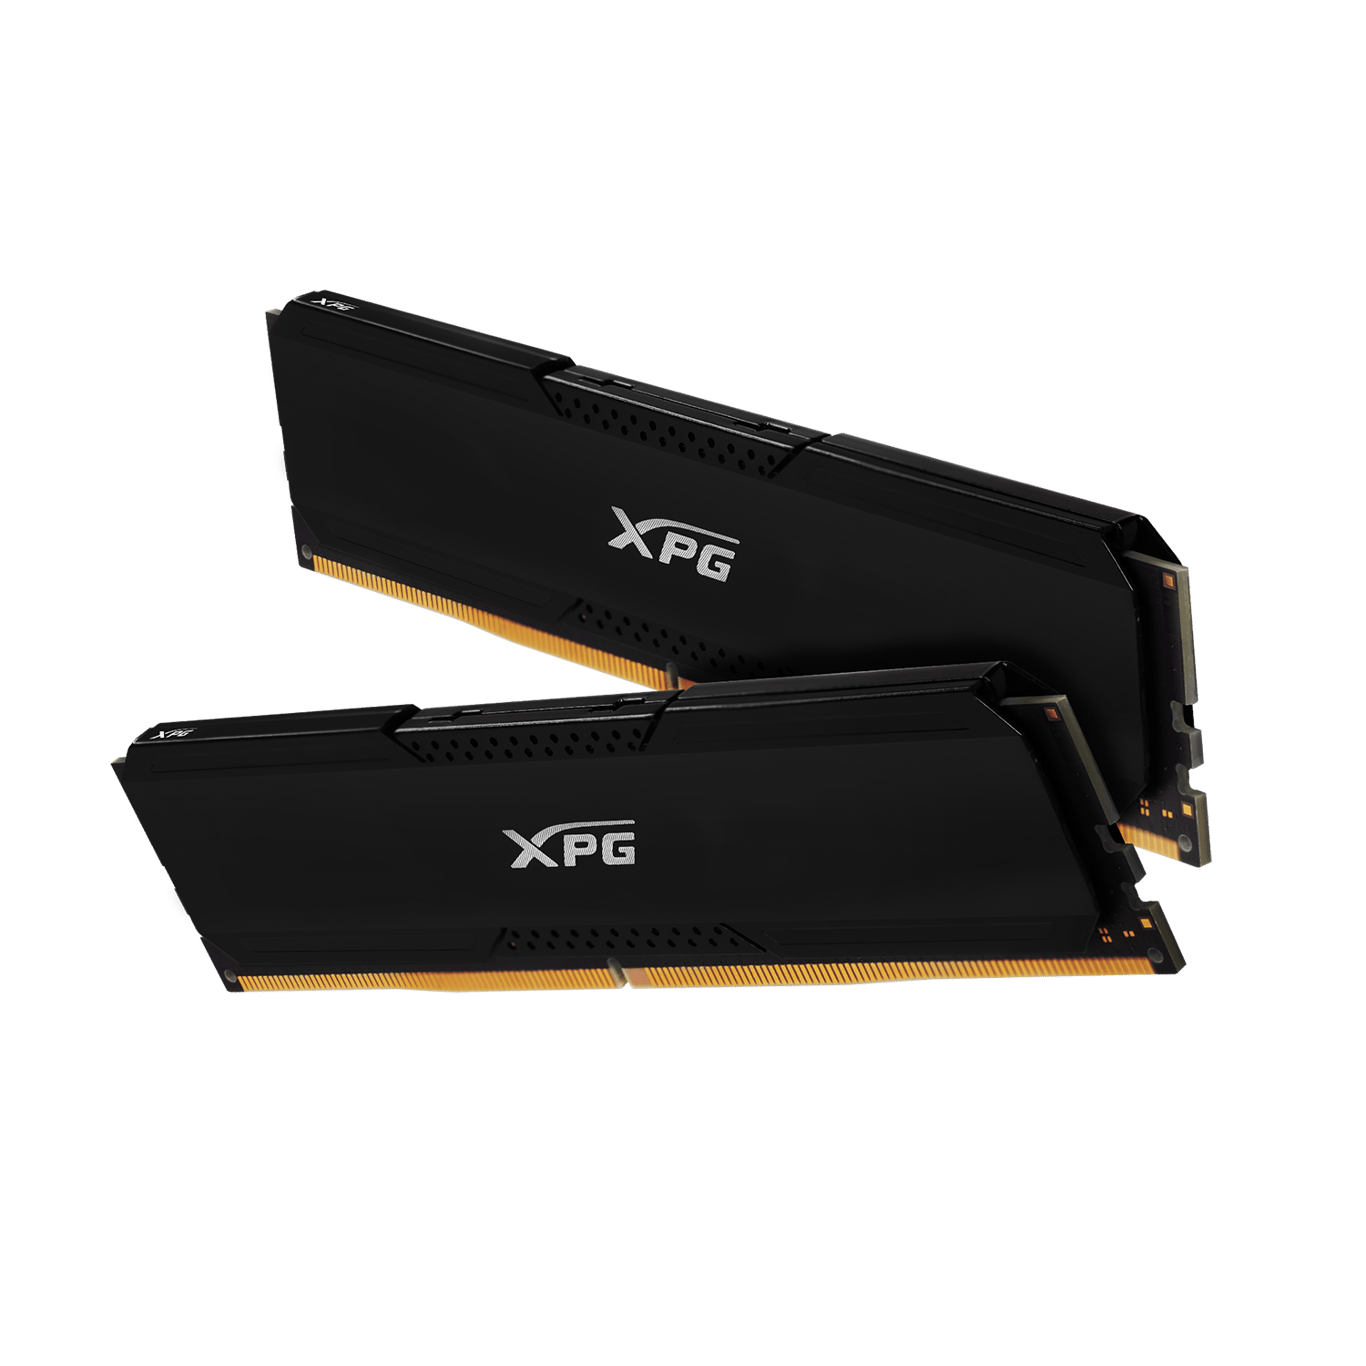 ADATA XPG GAMMIX D20 16GB (8GB x2) DDR4 3200MHz BLACK